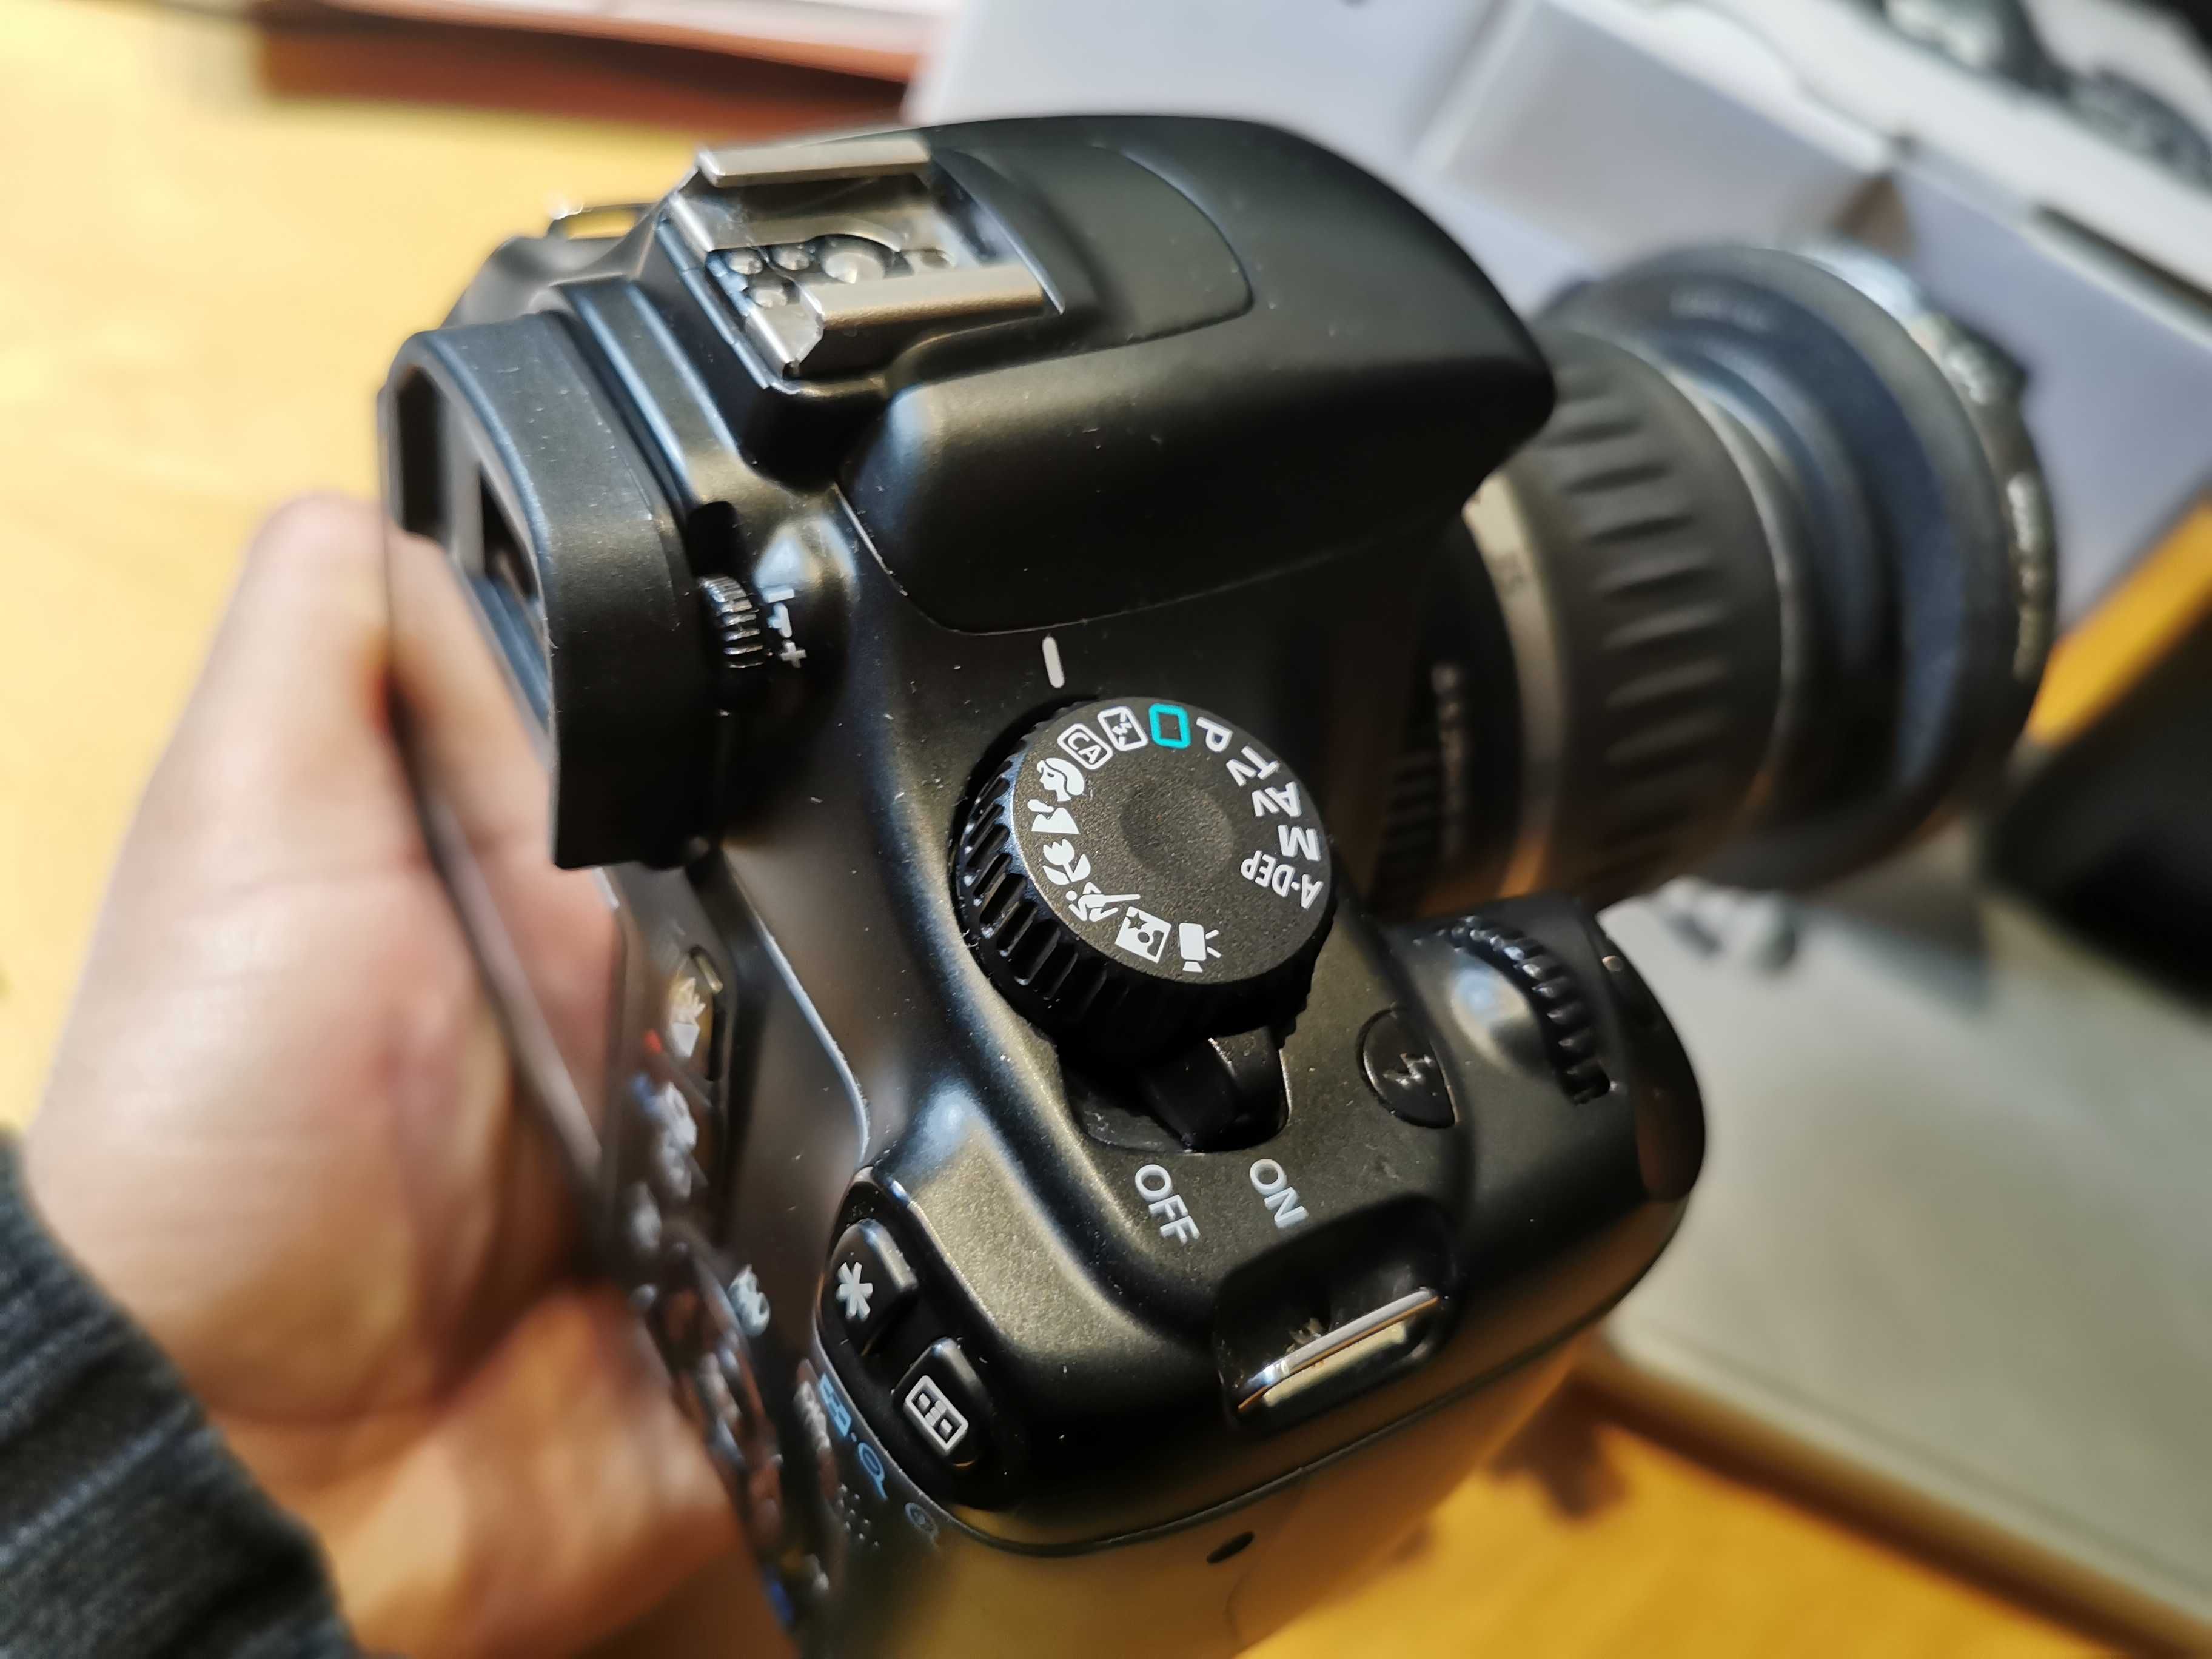 Canon EOS 1100D duży zestaw! Niski przebieg + 2 obiektywy, konwertery